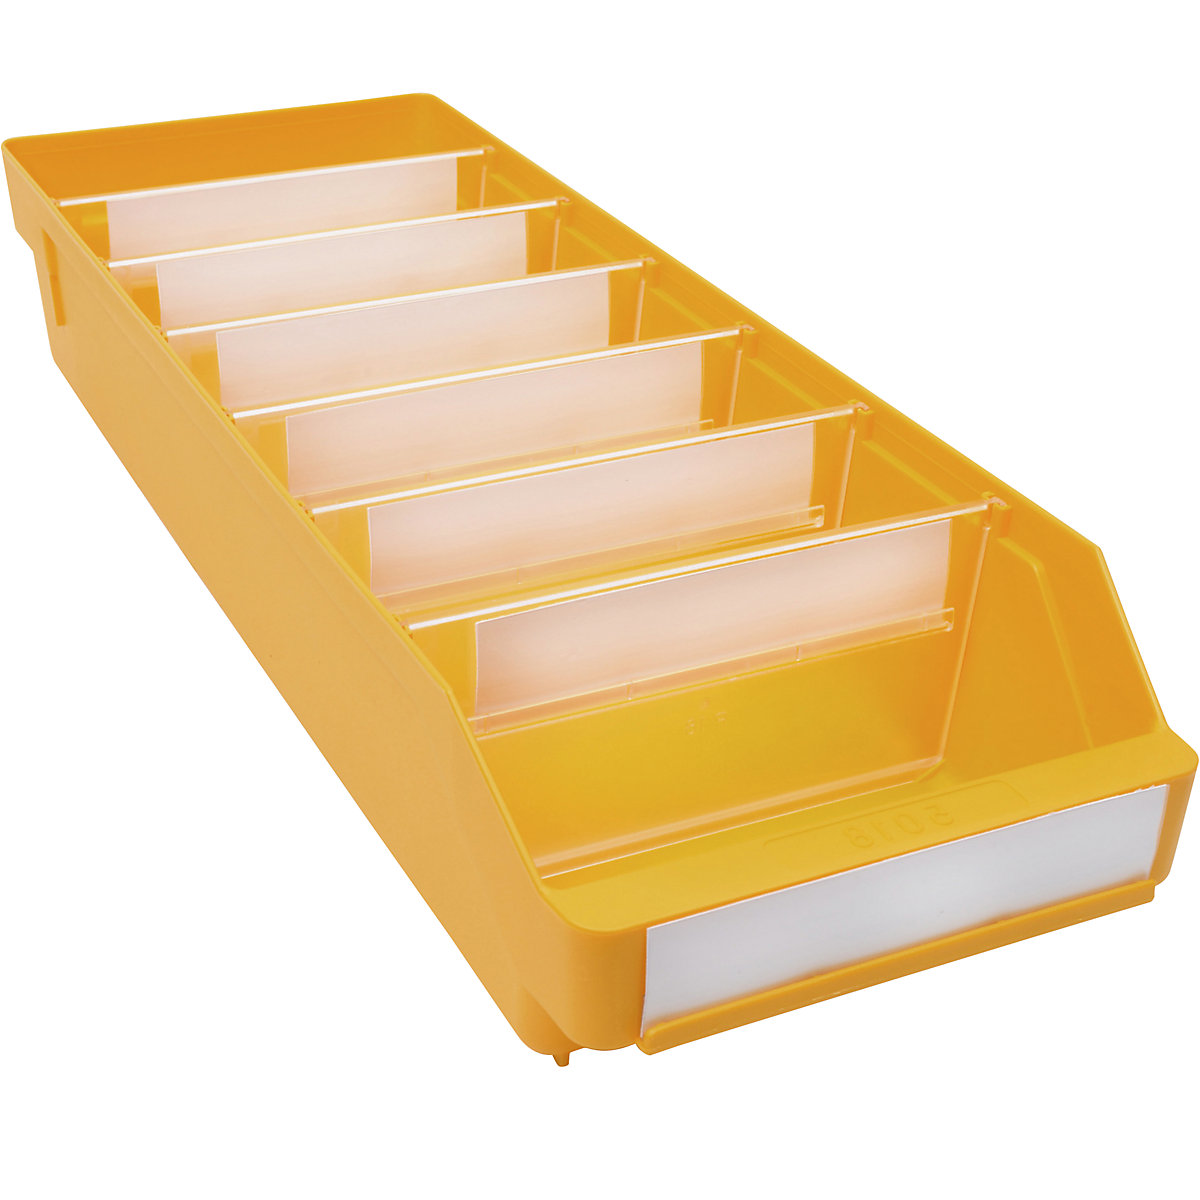 Cassettina per scaffali in polipropilene ad alta resistenza – STEMO, giallo, lungh. x largh. x alt. 500 x 180 x 95 mm, conf. da 20 pezzi-12